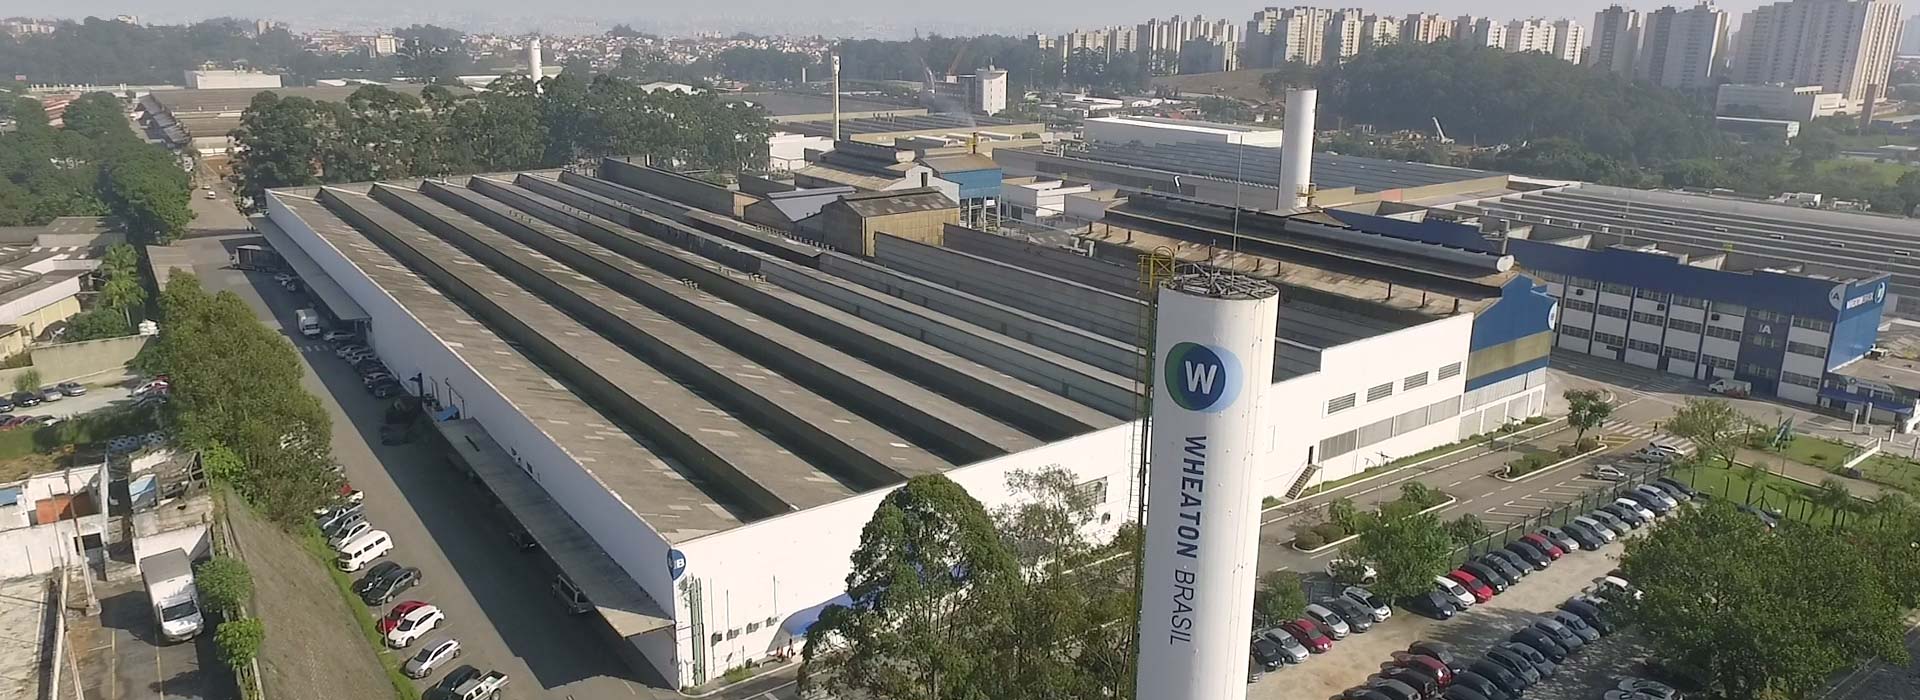 A Wheaton adquire a Verescense do Brasil (antiga SGD) e passa a ser uma das maiores fabricantes globais de embalagens de vidro para a indústria de perfumaria, cosméticos e farmacêuticos.